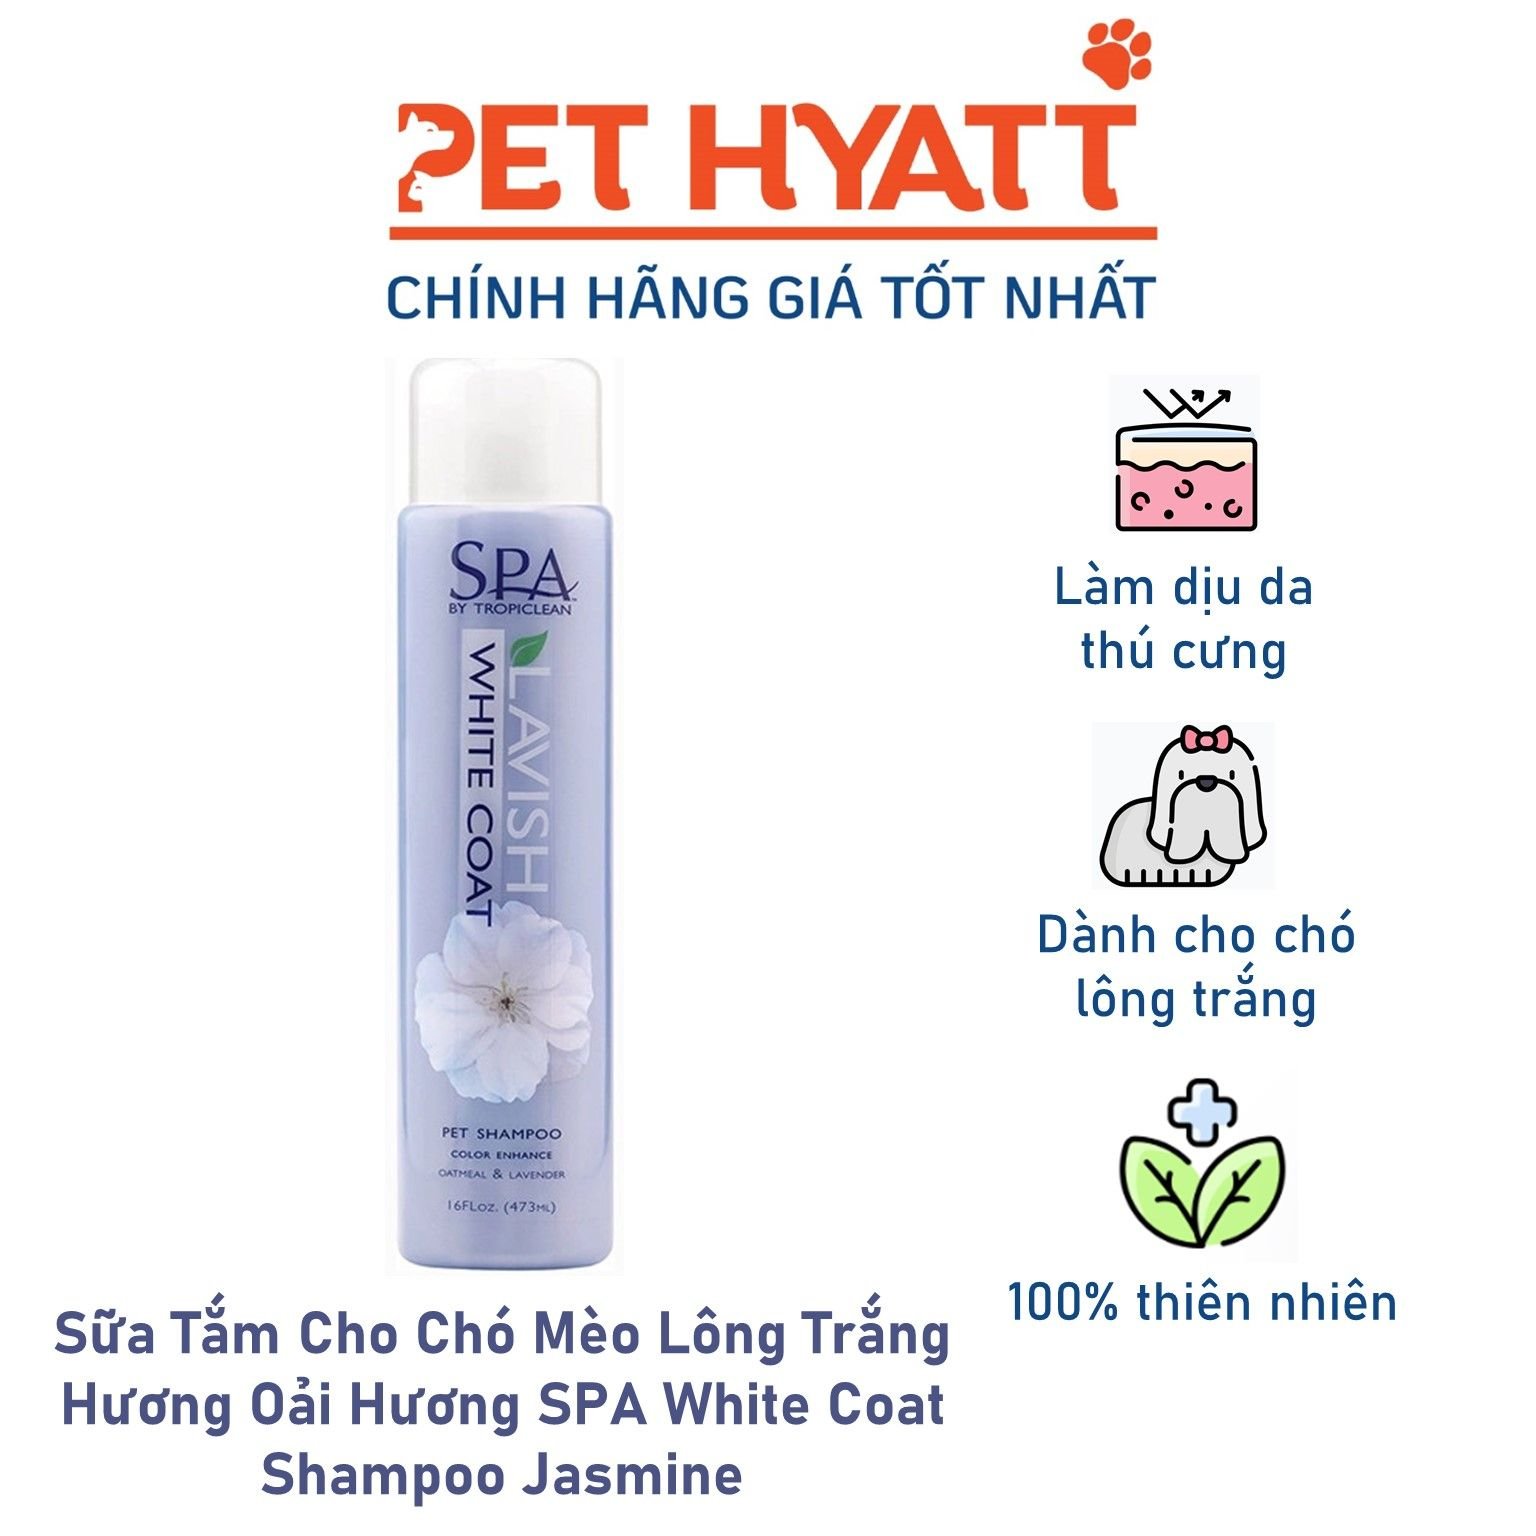 Sữa Tắm Cho Chó Mèo Lông Trắng Hương Oải Hương SPA White Coat Shampoo Jasmine